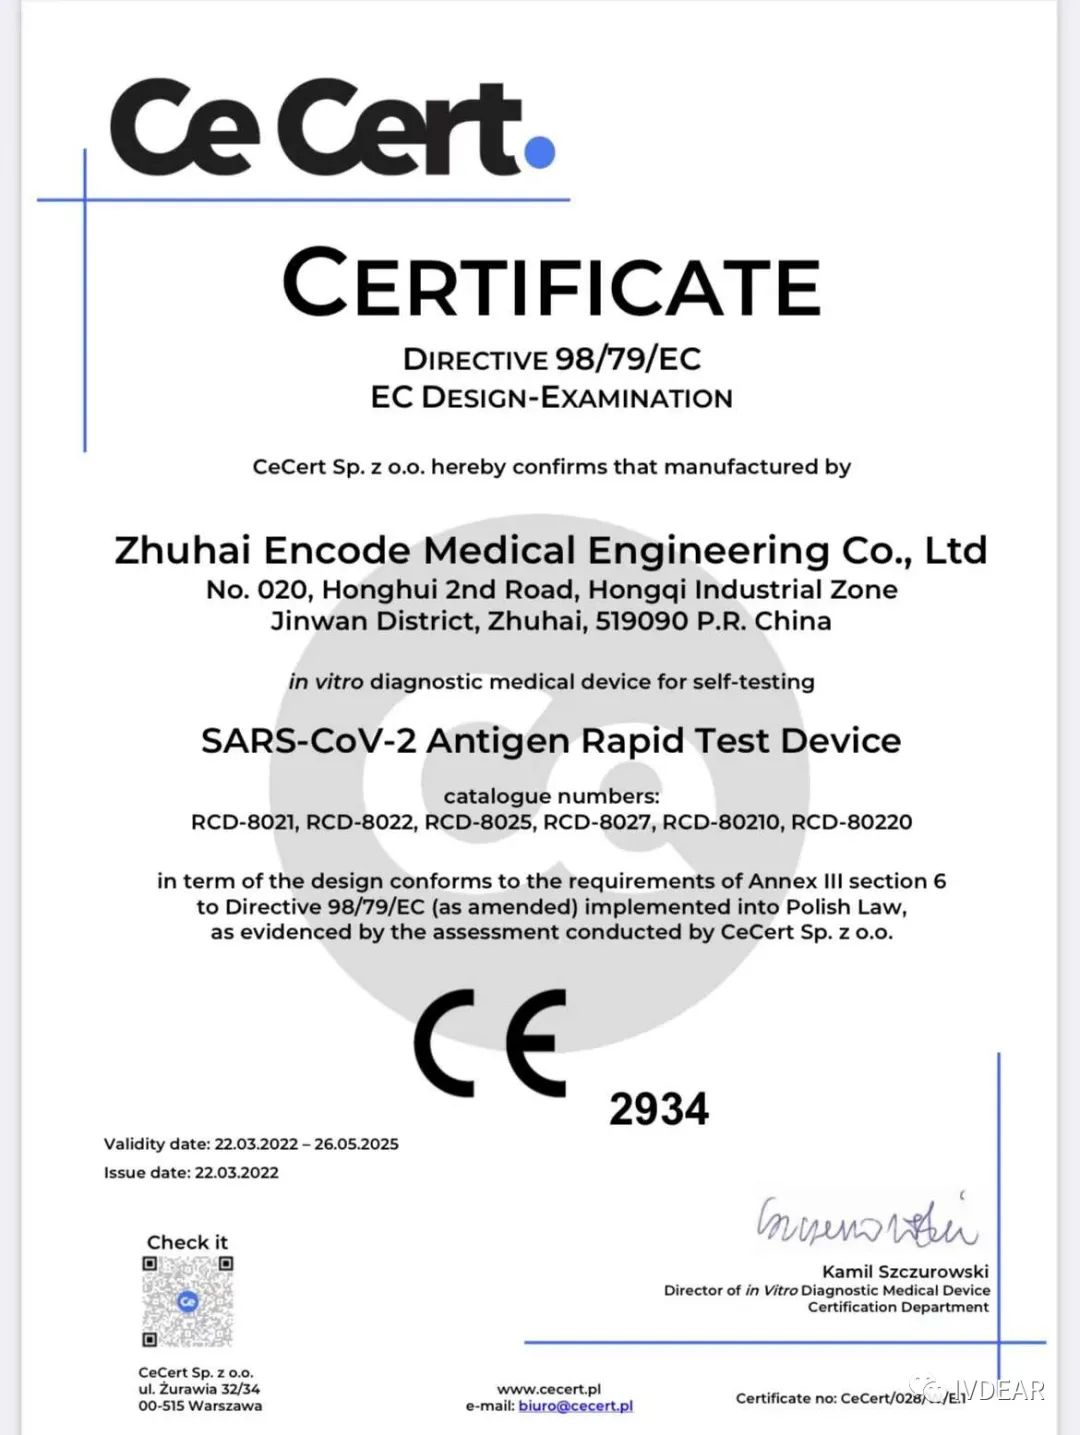 银科新冠抗原检测试剂盒获得欧盟自测CE认证.jpg